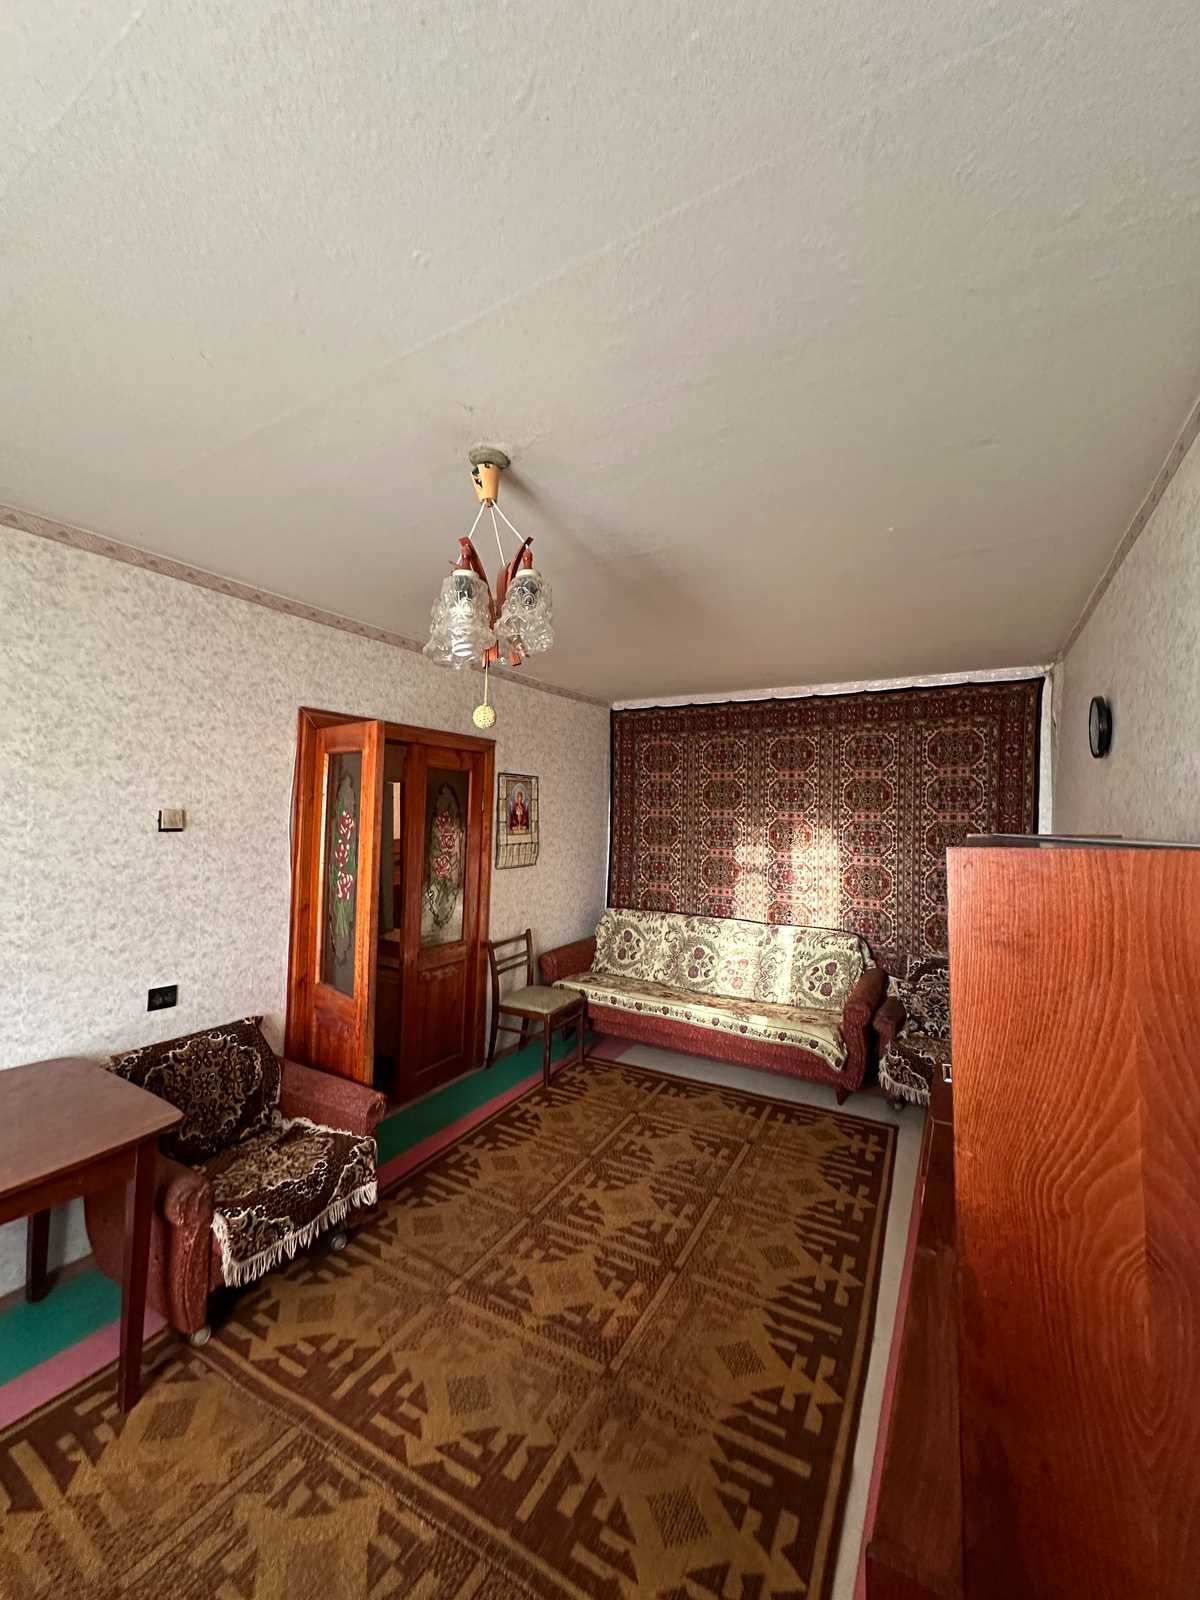 Продам 2 комнатную квартиру на Гидропарковой. ж/м Парус. Отличная цена